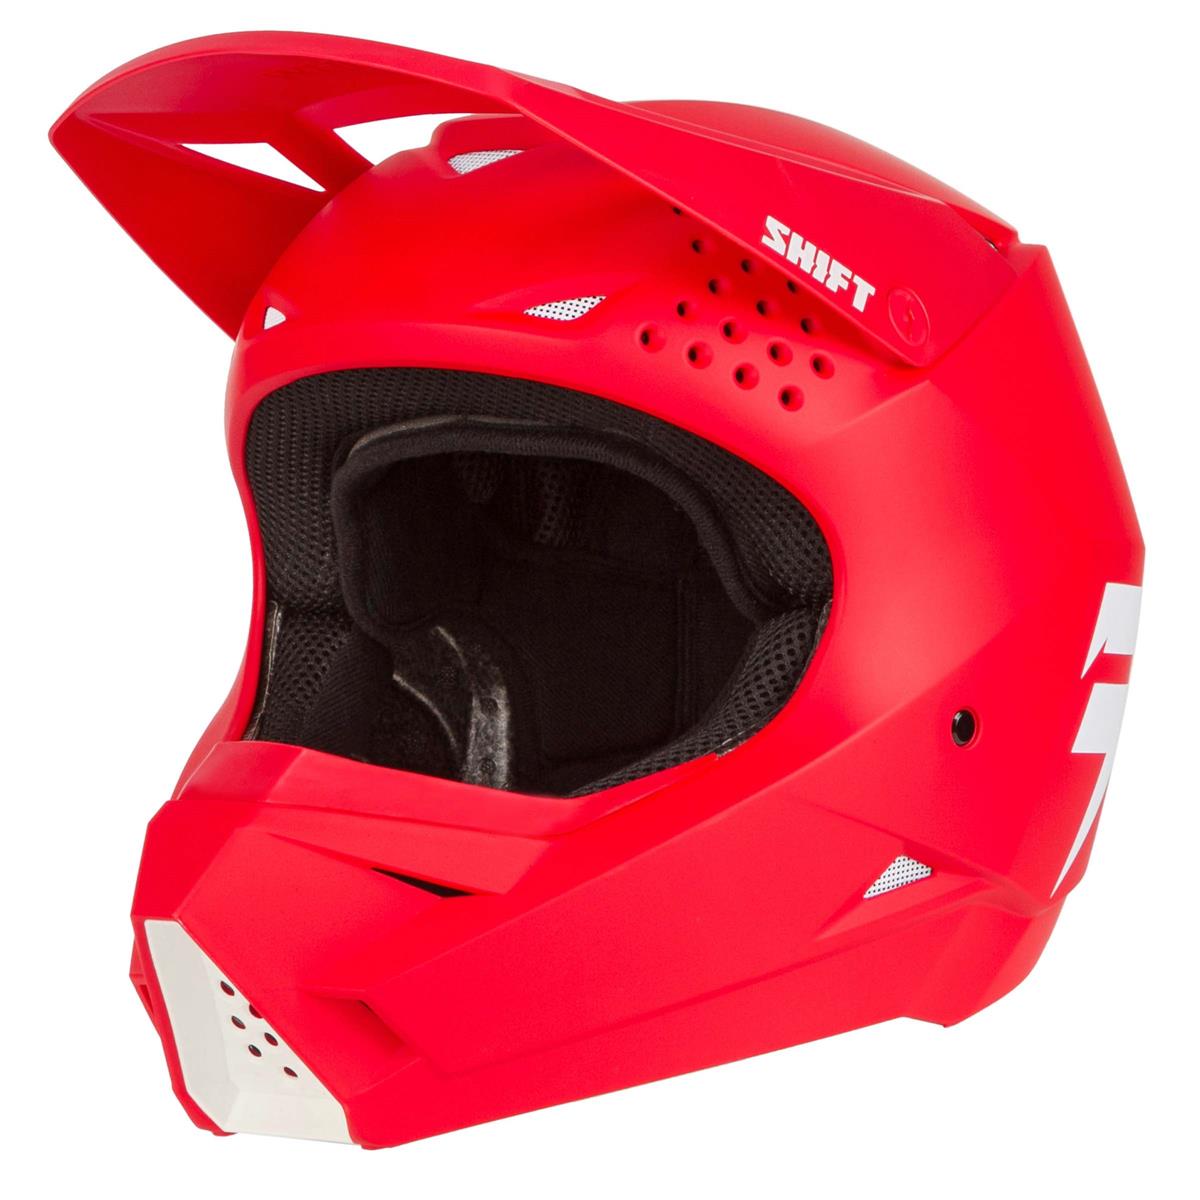 Shift Motocross-Helm Whit3 Label Rot